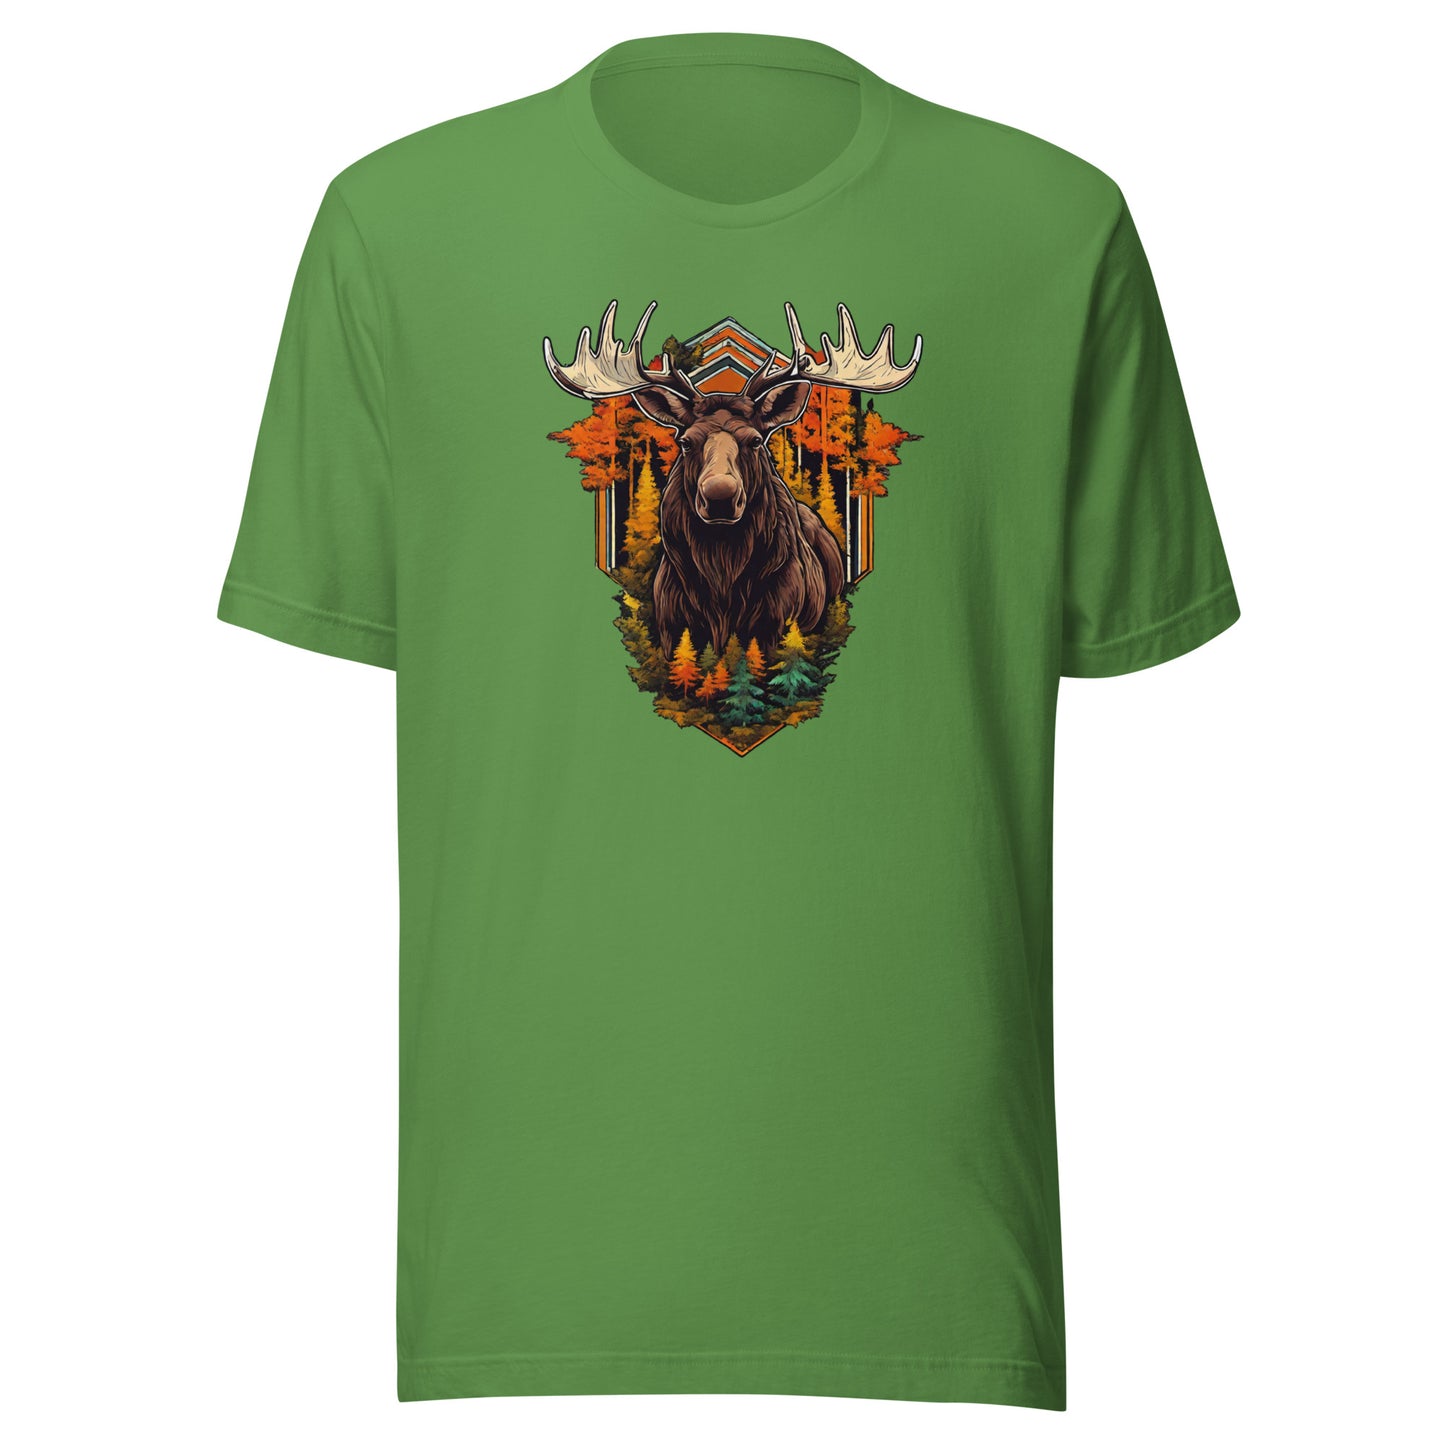 Moose & Forest Emblem Men's T-Shirt Leaf